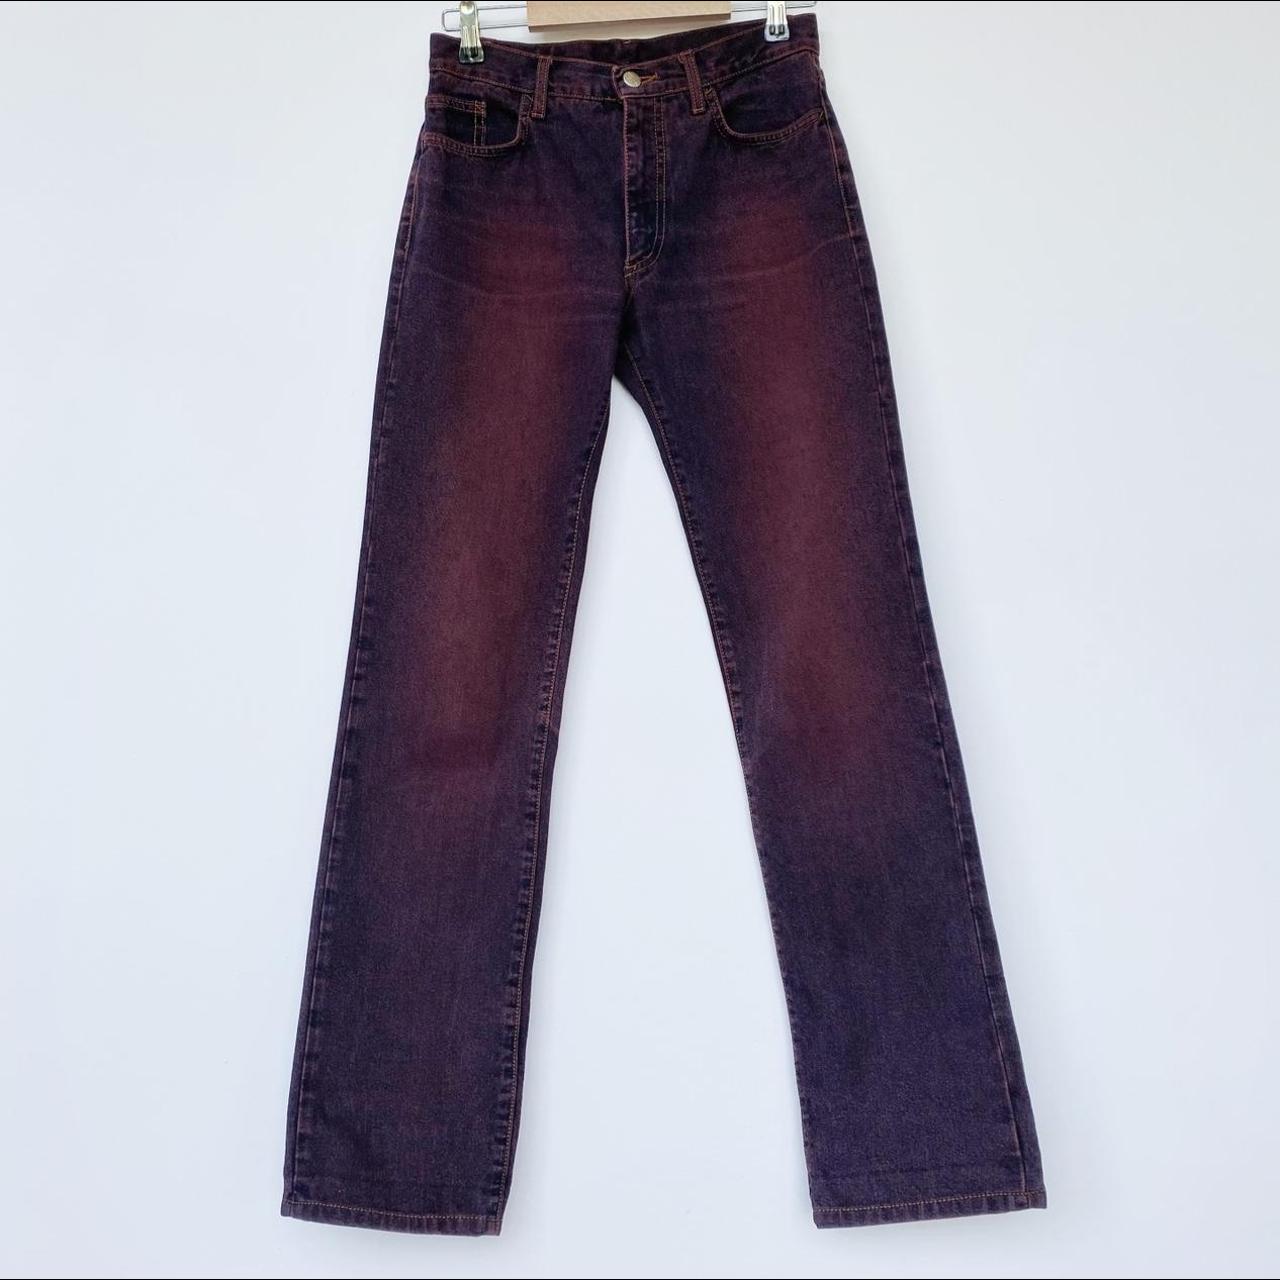 jean paul gaultier jeans beautiful denim pants in - Depop